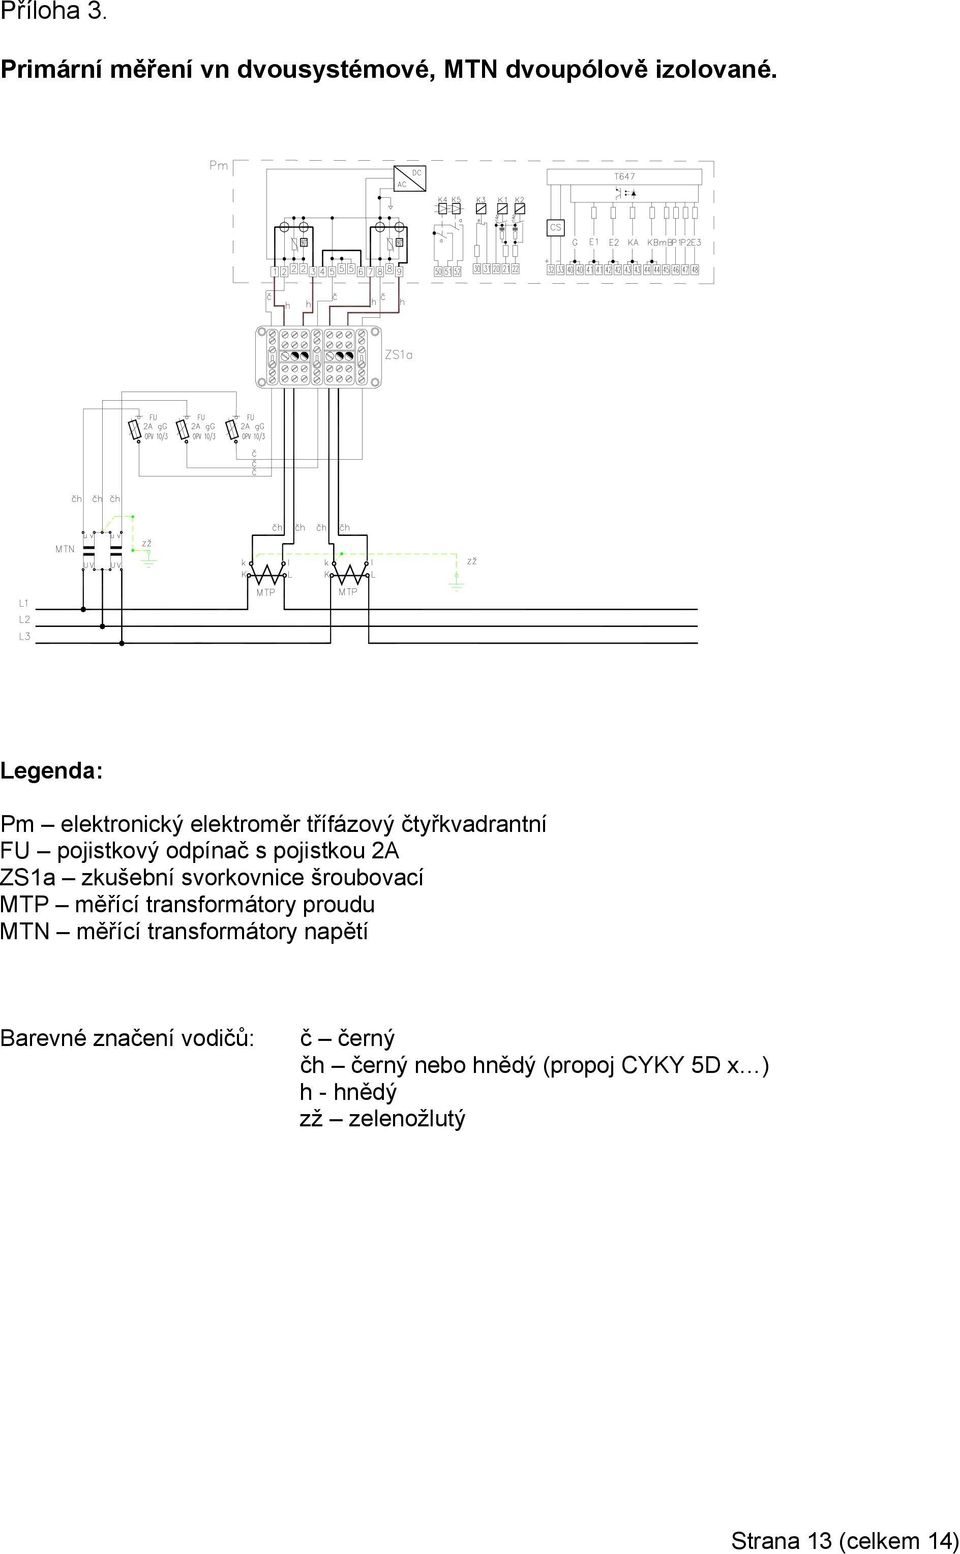 ZS1a zkušební svorkovnice šroubovací MTP měřící transformátory proudu MTN měřící transformátory